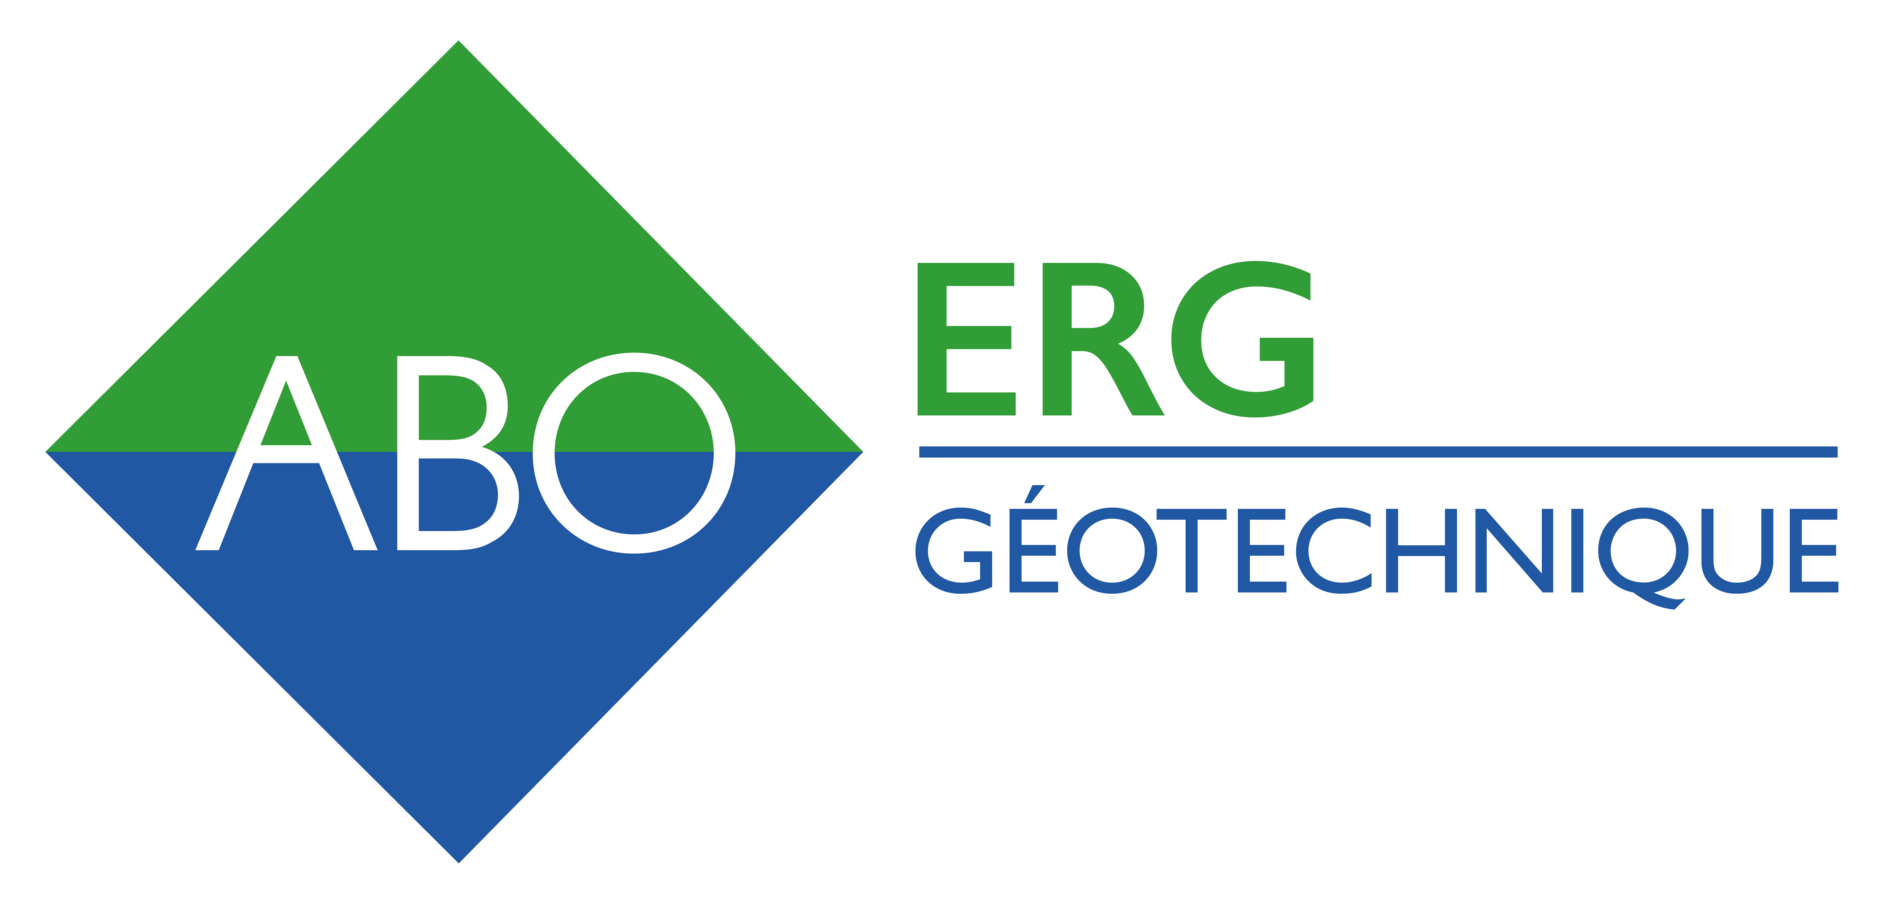 Logo ABO ERG Geotechnique